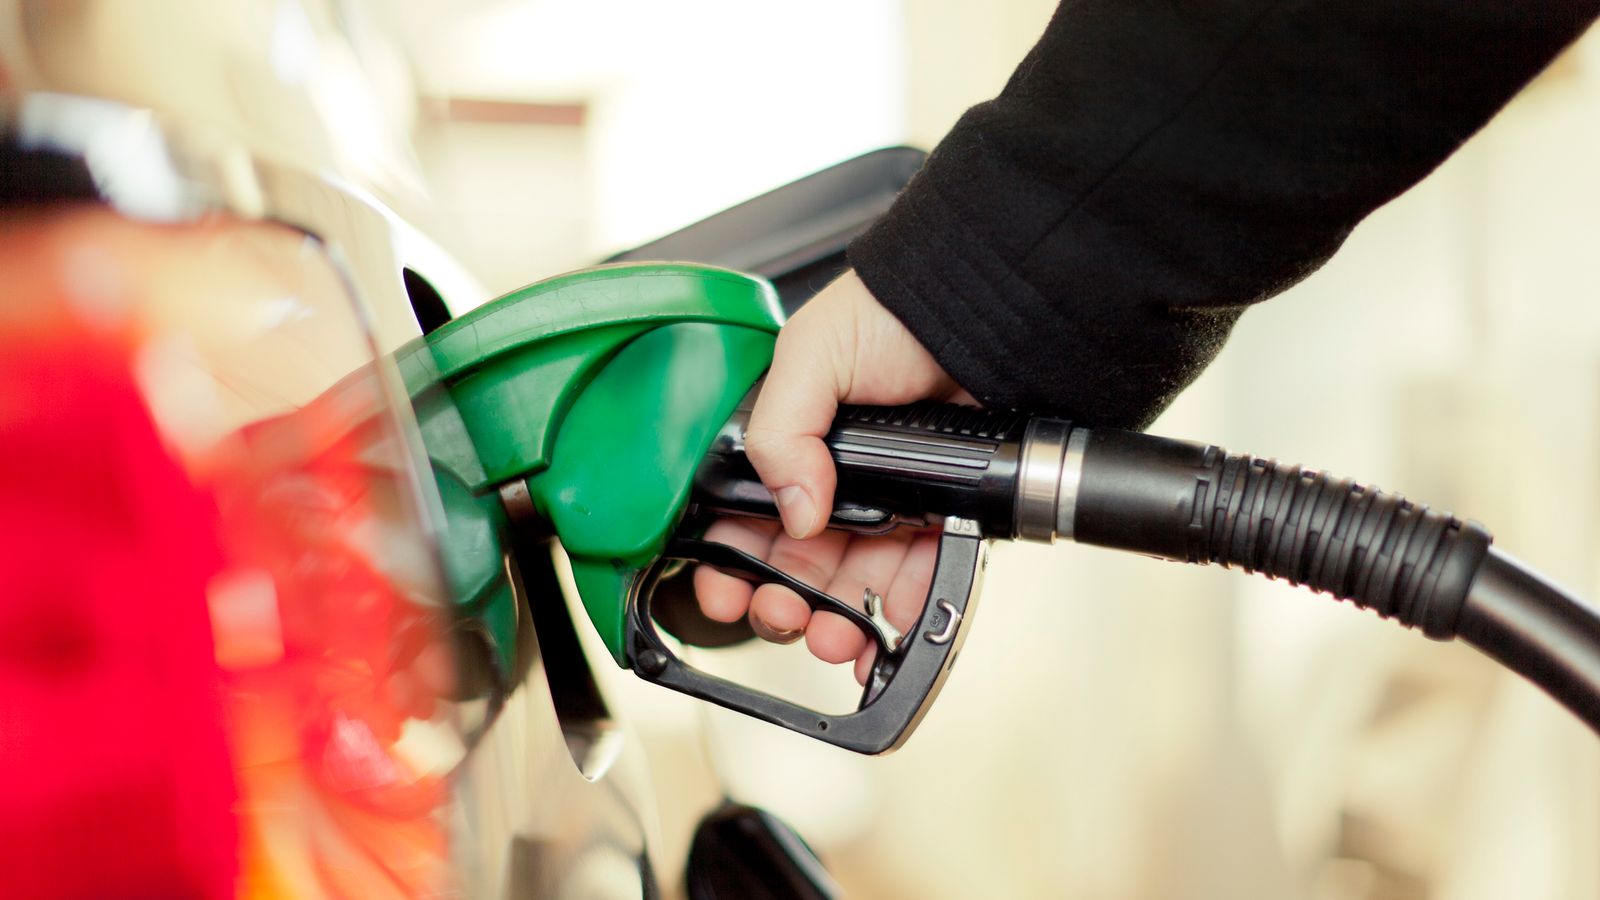 تكلفة المعيشة: أسعار الوقود تسجل أرقاماً قياسية جديدة على الرغم من “انخفاض التكلفة الإجمالية” |  أخبار الأعمال